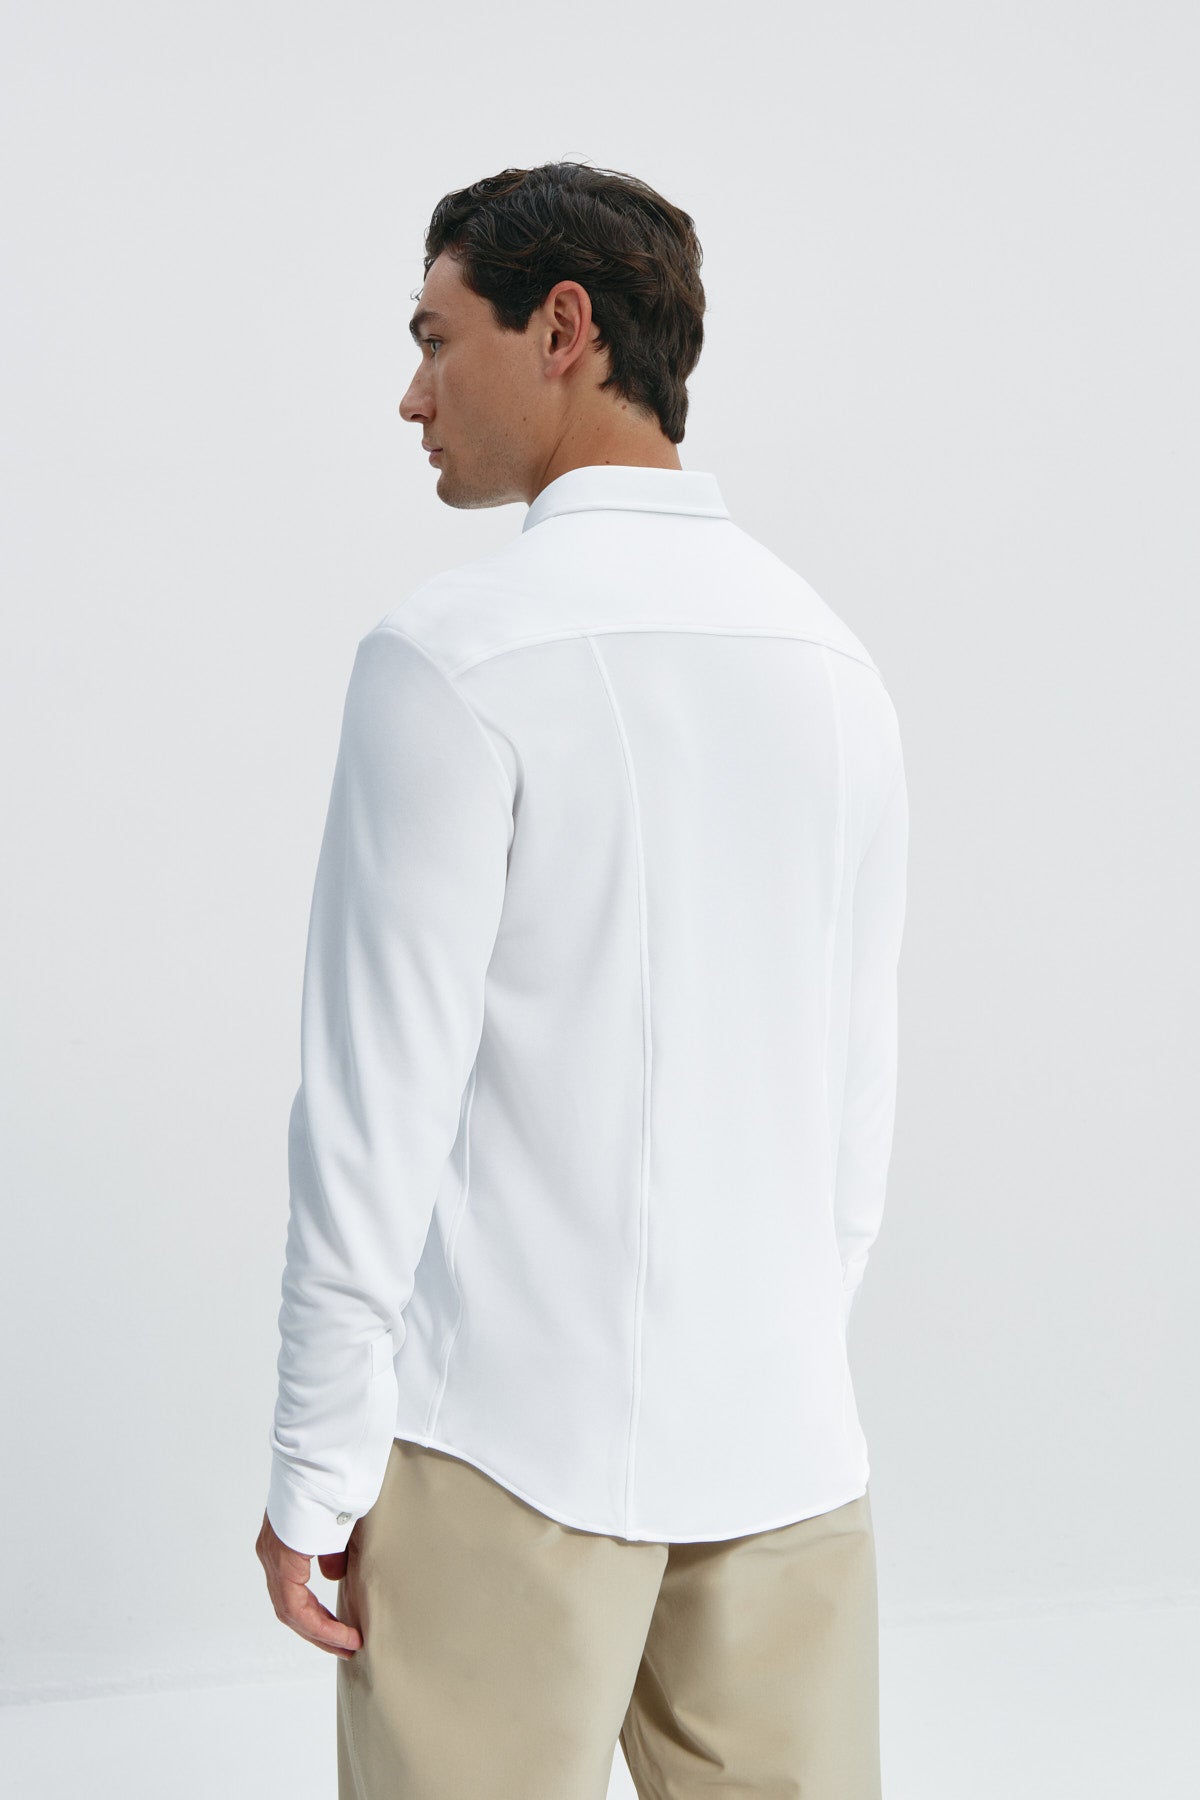 Camisa casual blanca para hombre sin arrugas ni manchas. Manga larga, antiarrugas y antimanchas. Foto espalda